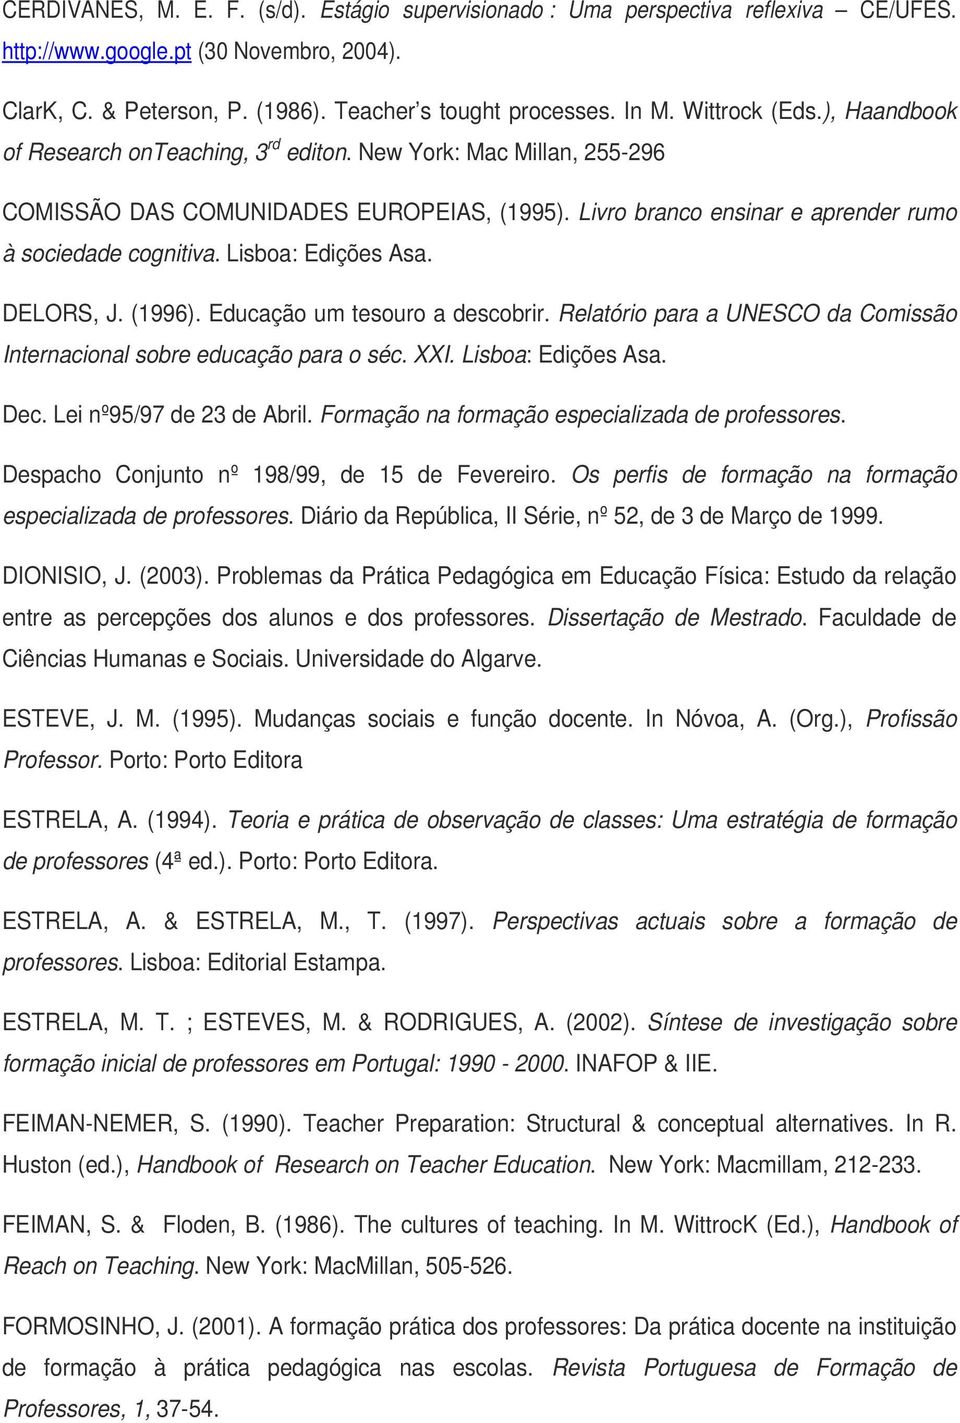 Lisboa: Edições Asa. DELORS, J. (1996). Educação um tesouro a descobrir. Relatório para a UNESCO da Comissão Internacional sobre educação para o séc. XXI. Lisboa: Edições Asa. Dec.